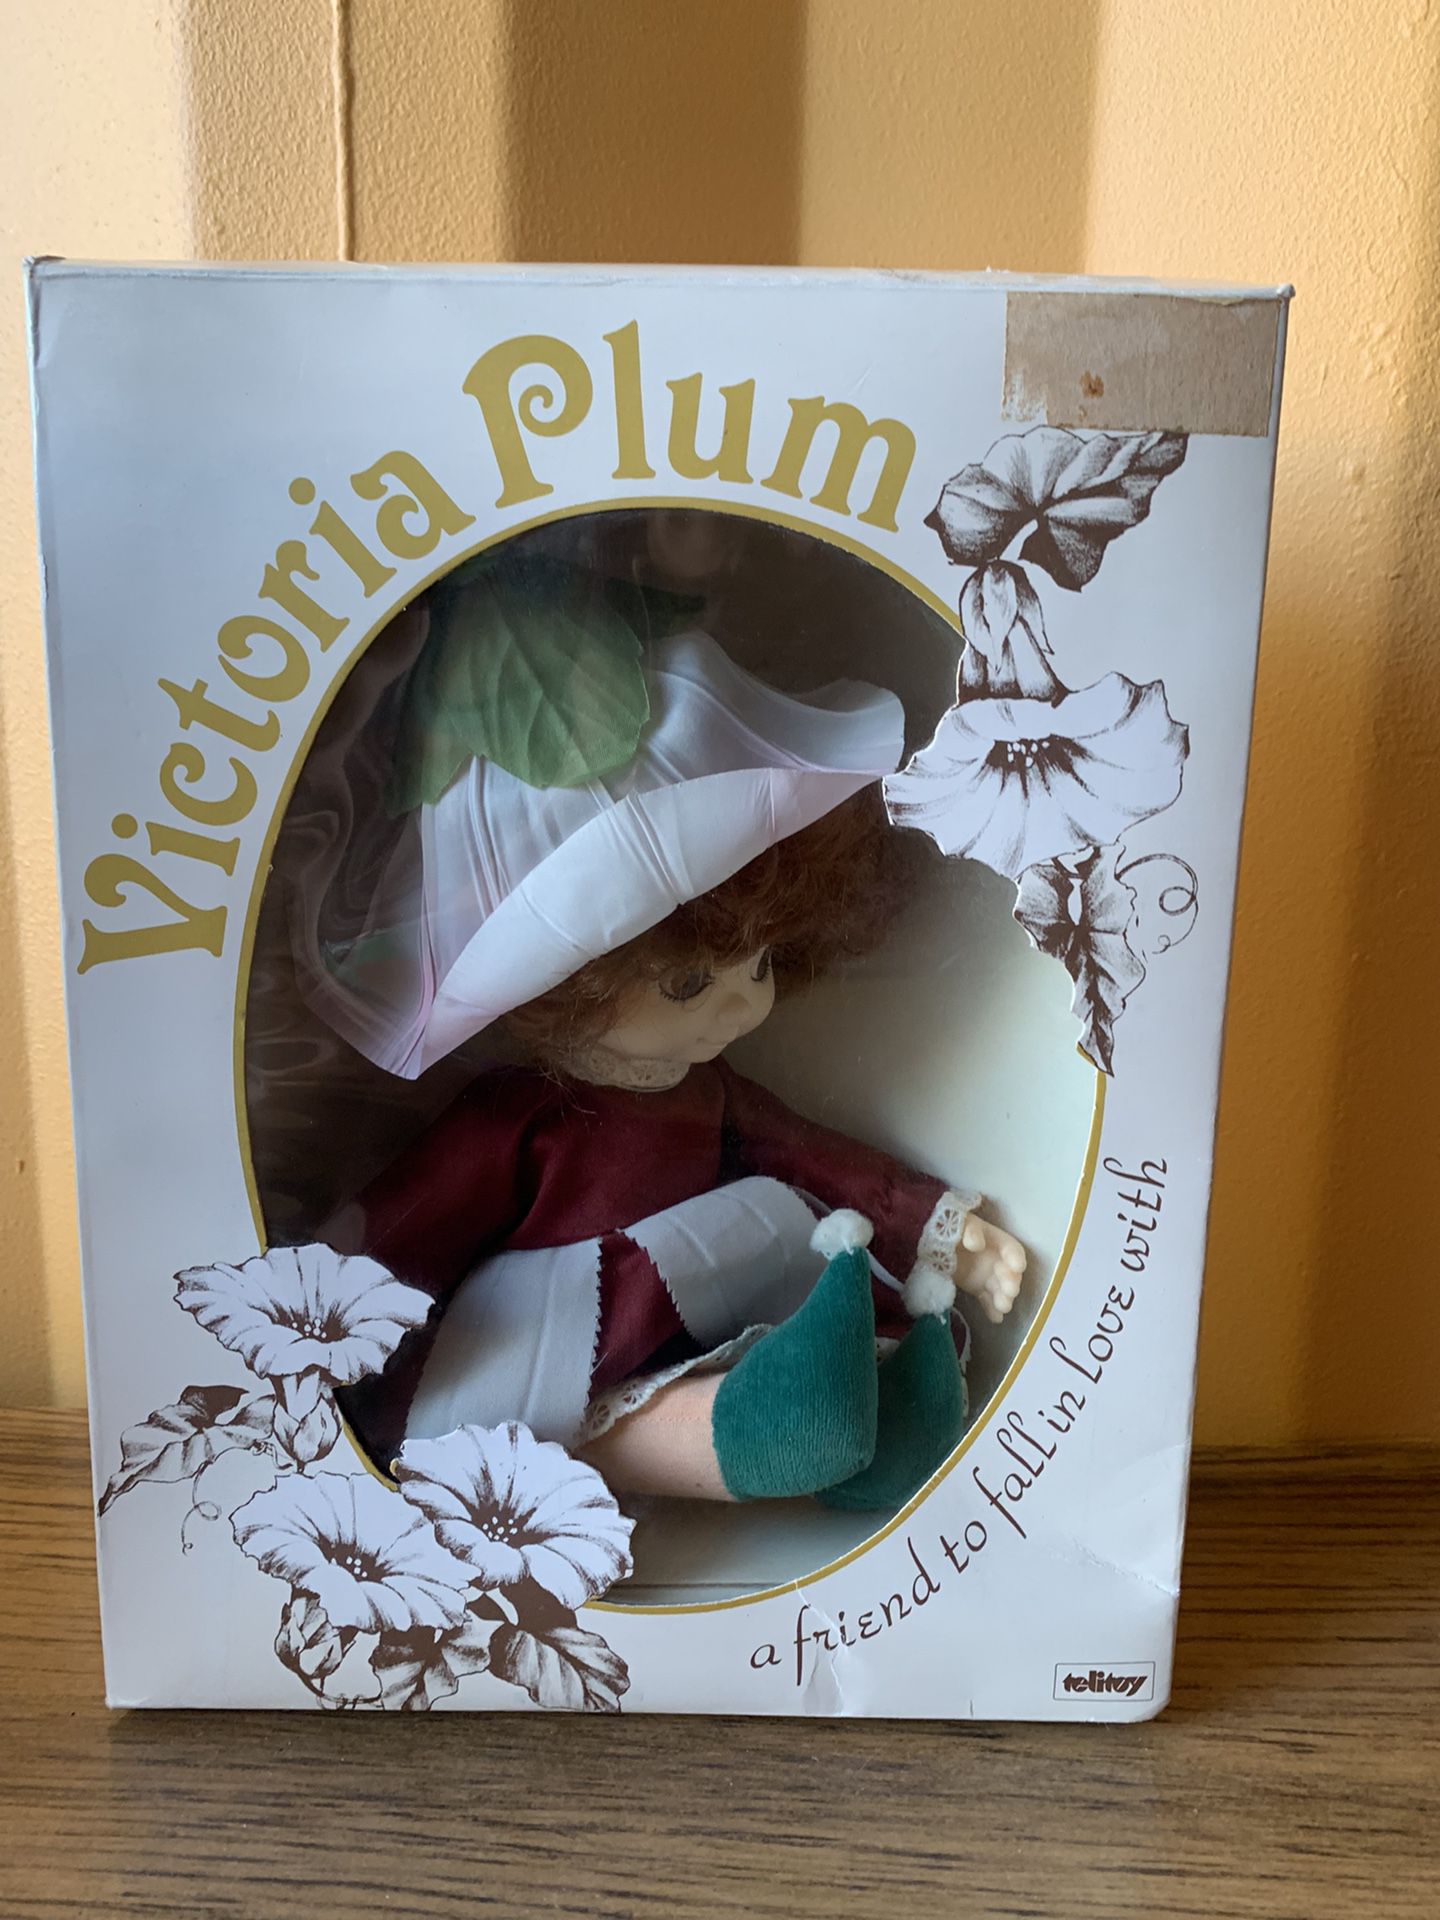 Vintage Victoria plum doll